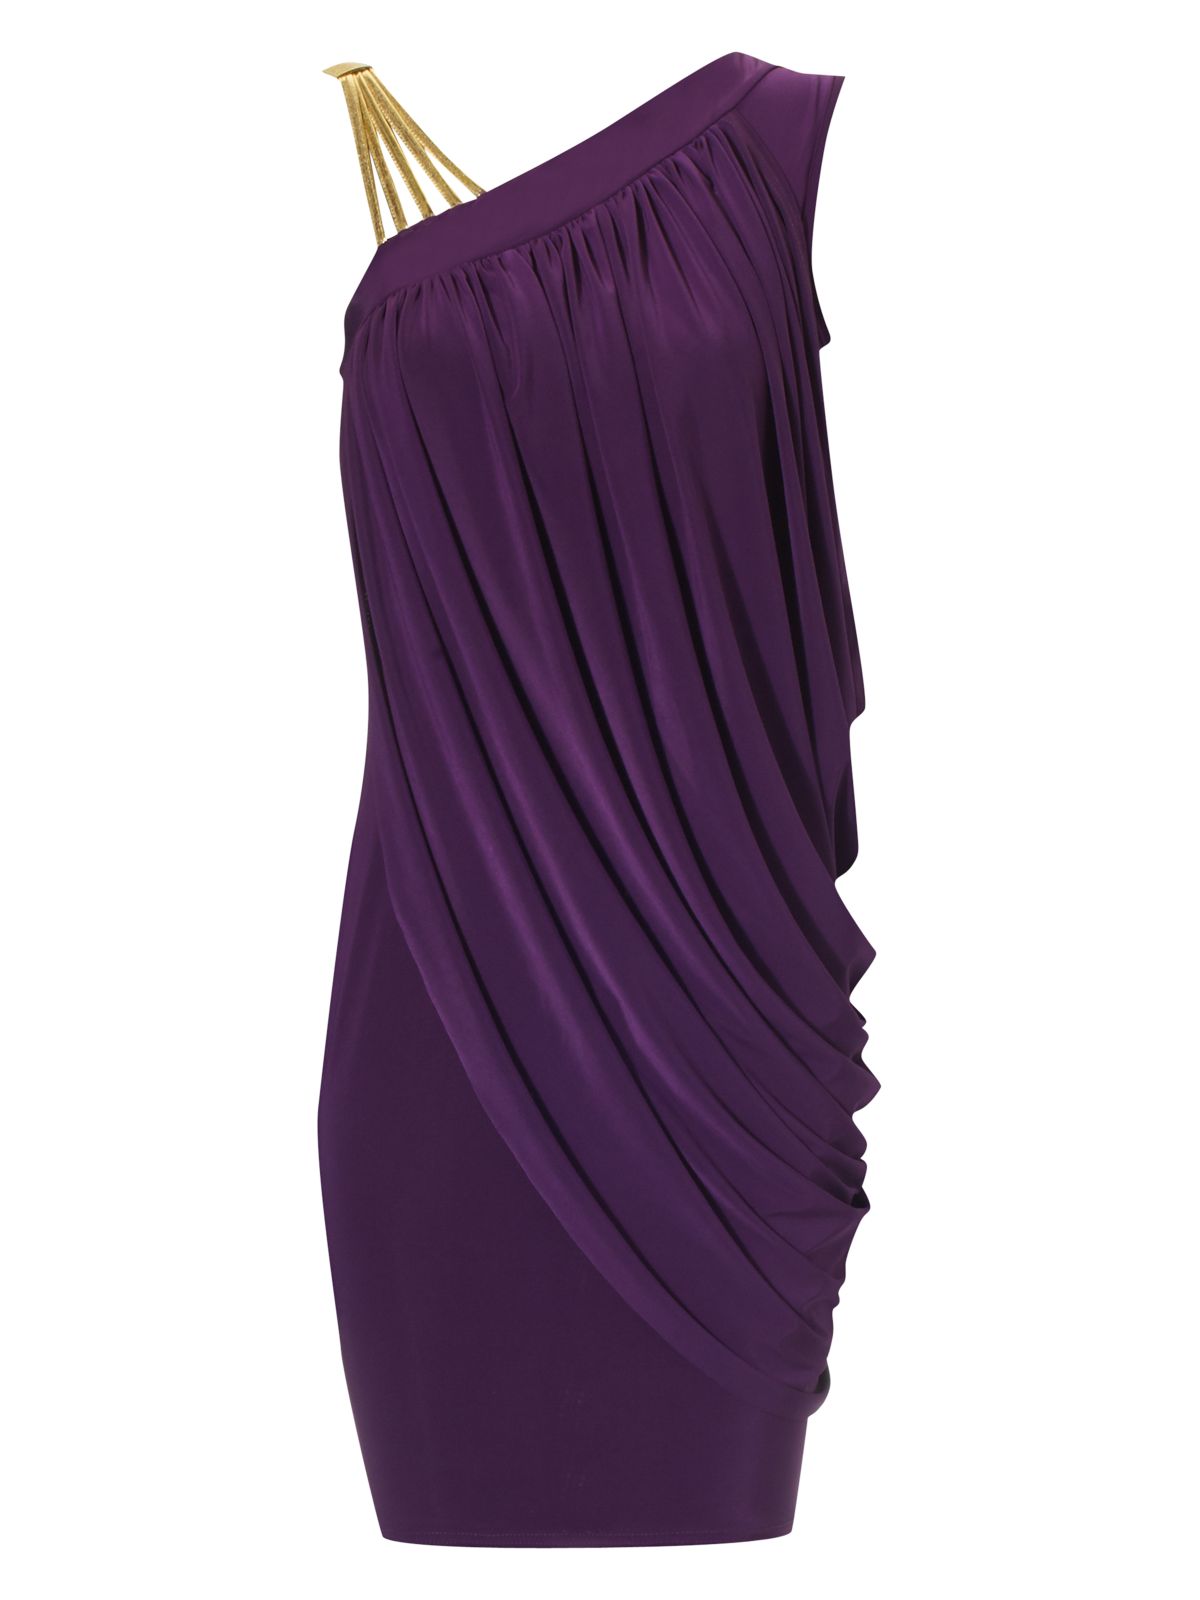 Jane Norman Gold Strap Dress in Purple | Lyst